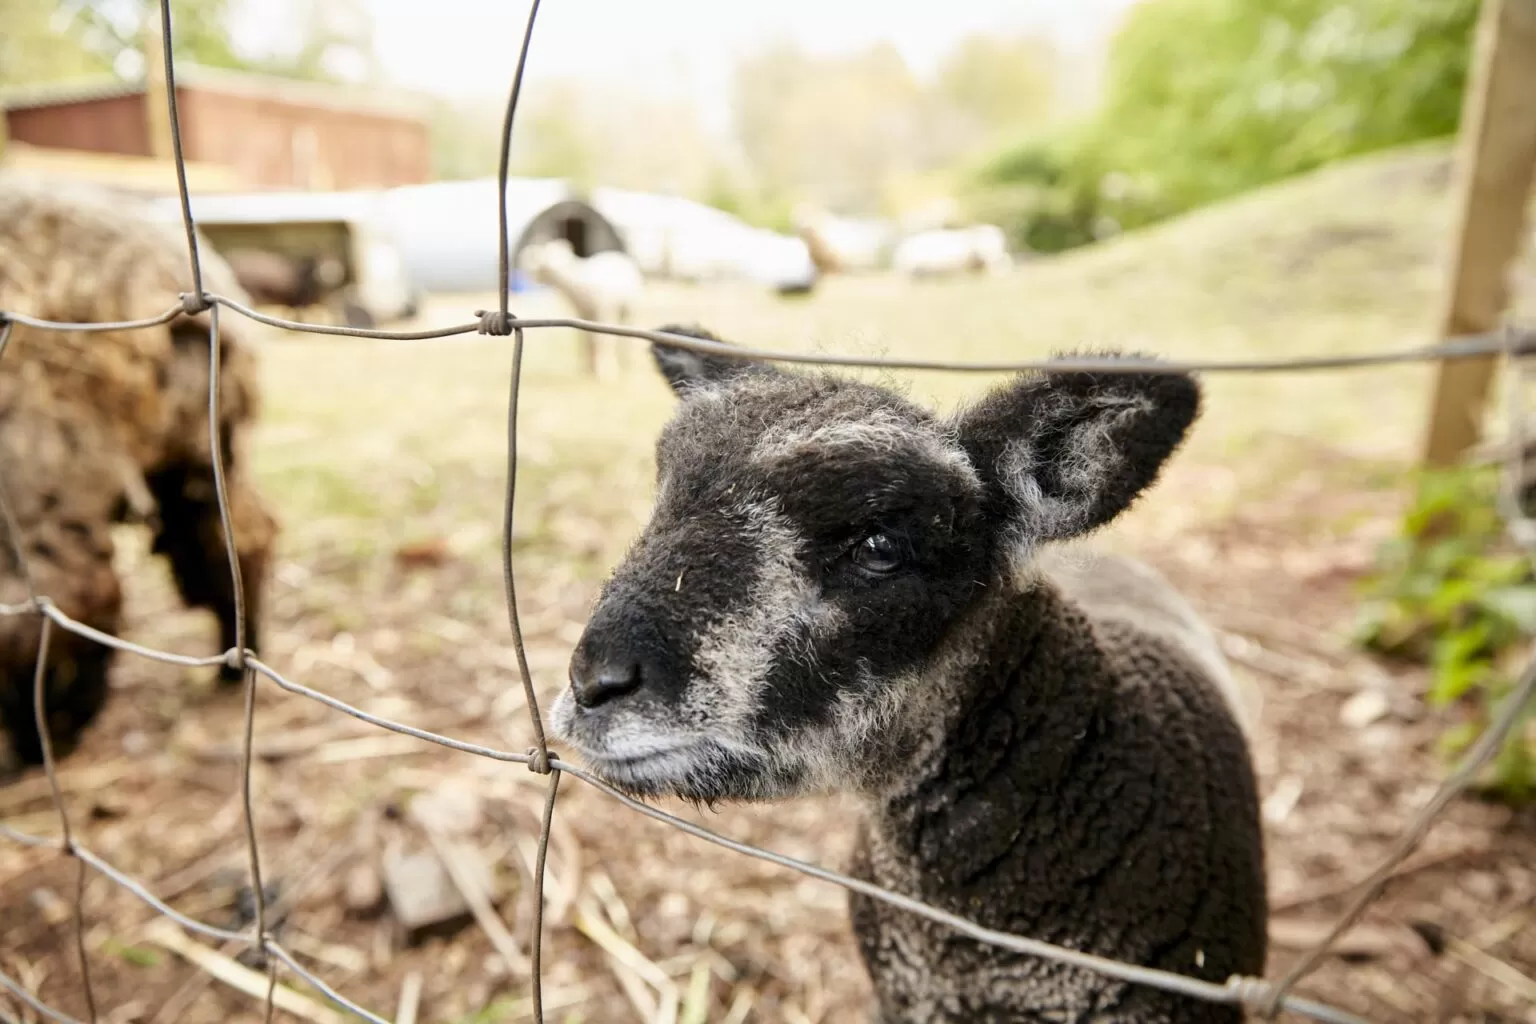 A lamb at Windmill Hill City Farm